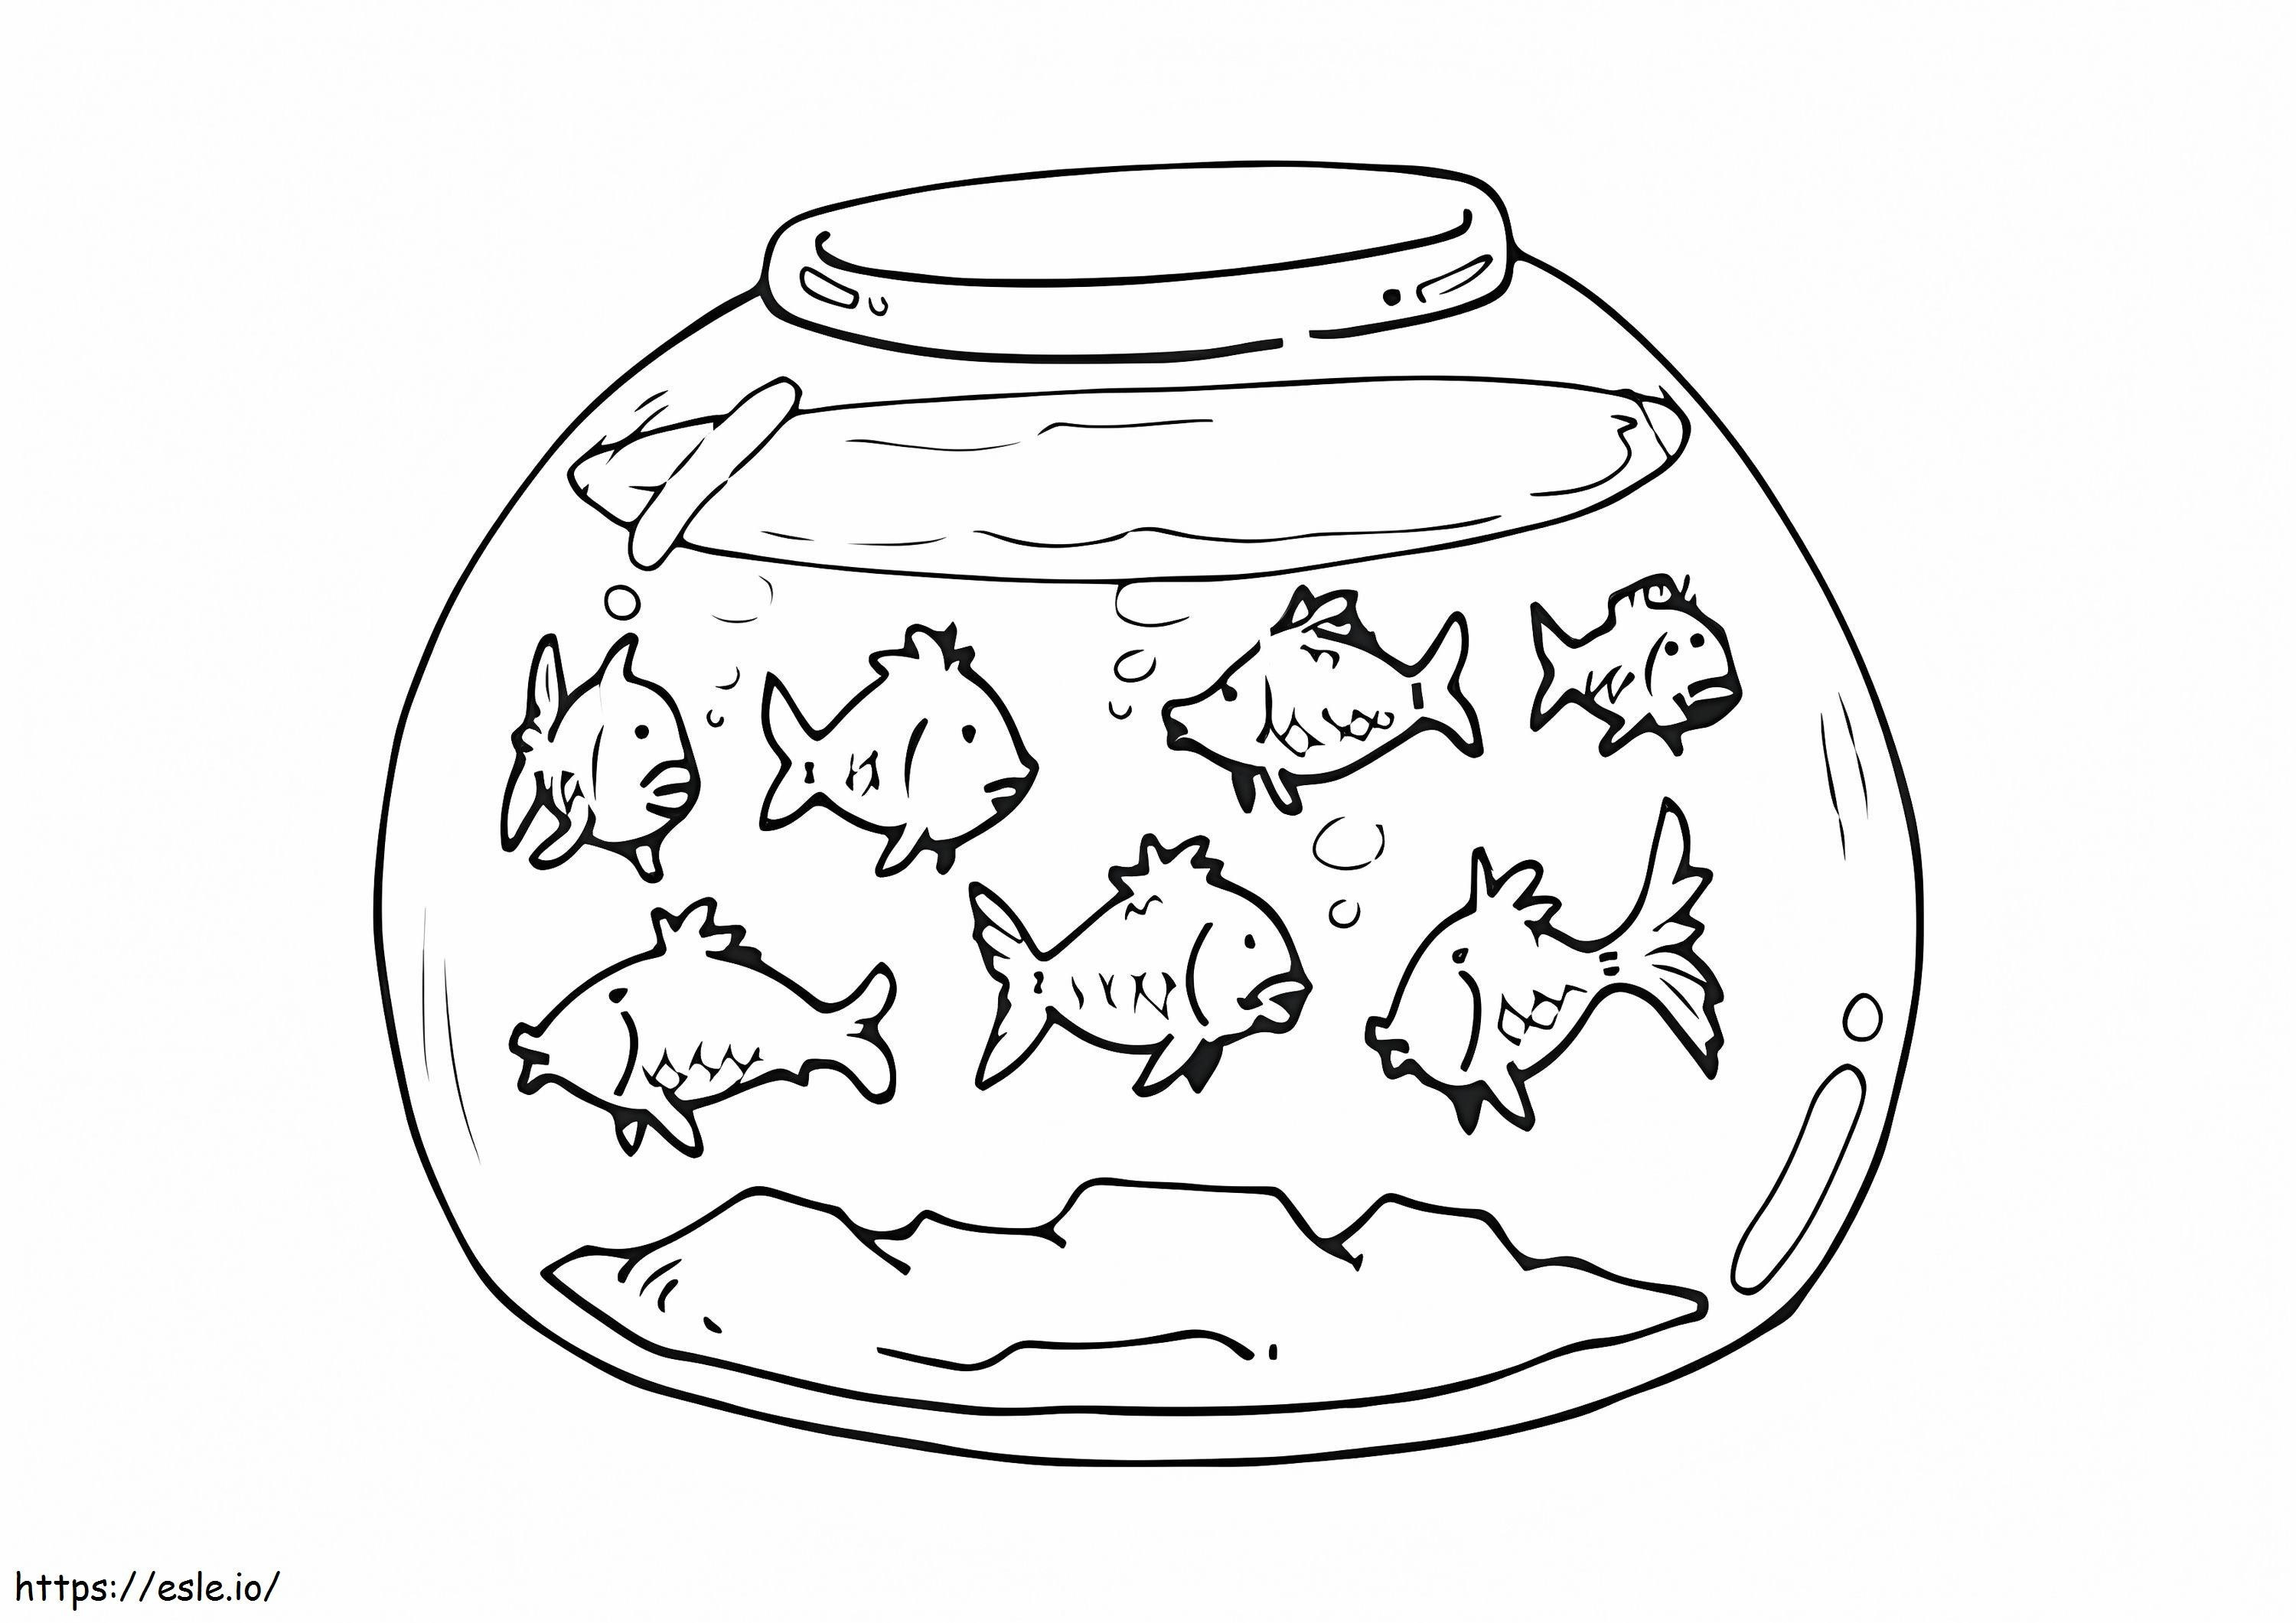 Fish Bowl coloring page